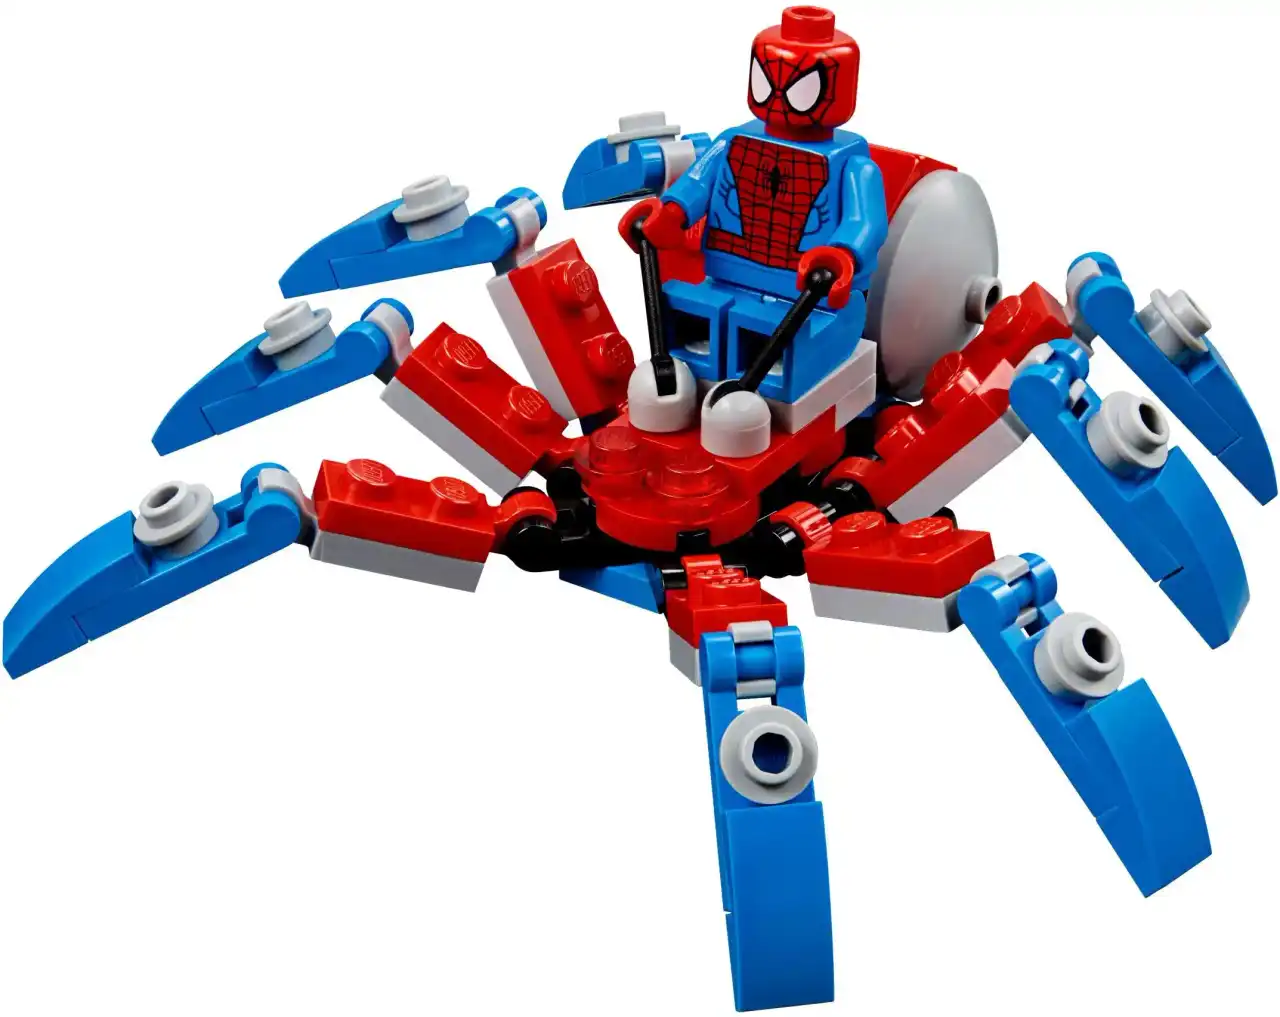 30451 - Spider-Man's Mini Spider Crawler